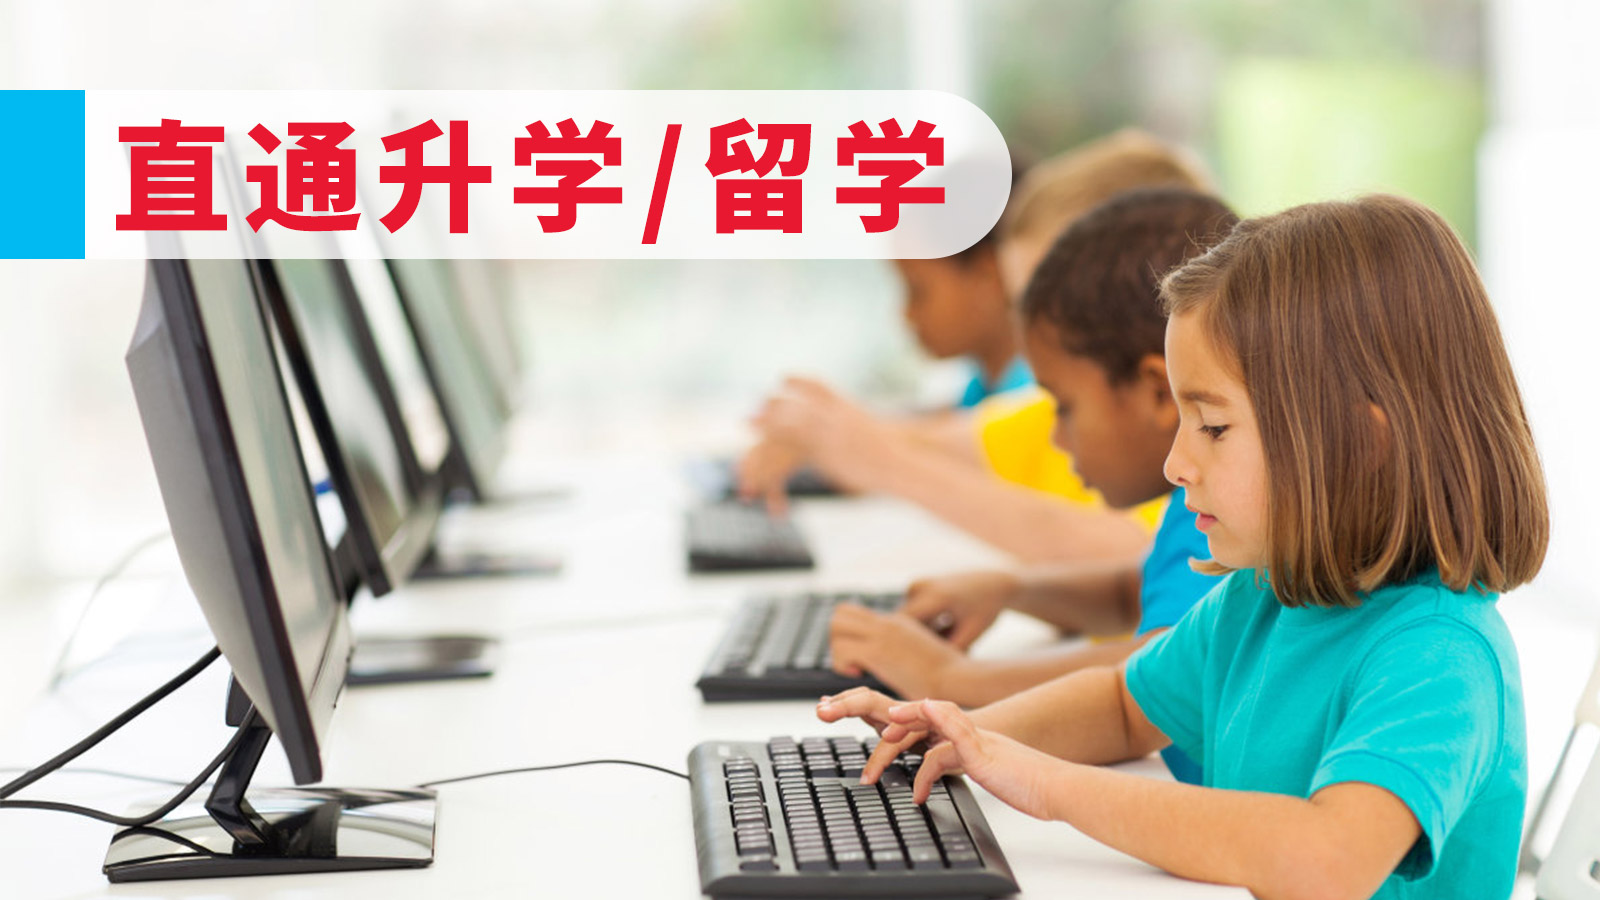 上海森孚机器人教育3-16岁儿童机器人等级考图片